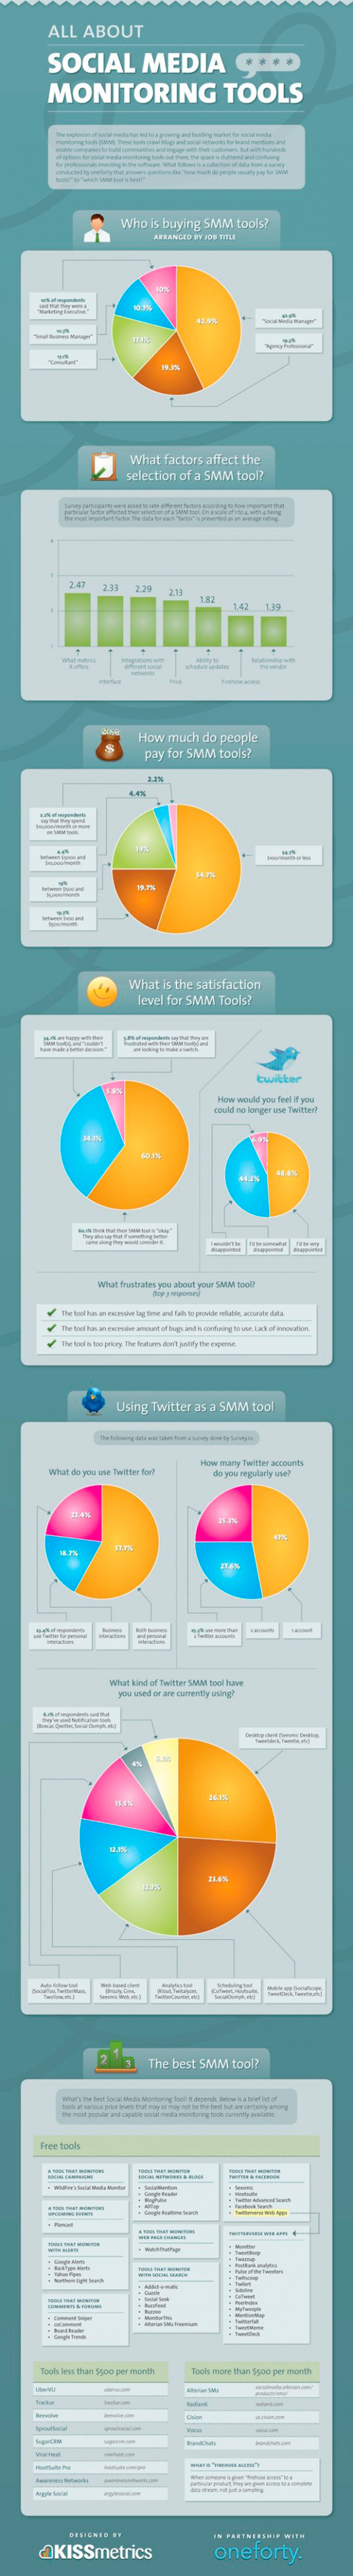 Infografia sobre las herramientas de monitoreo para vuestro social media